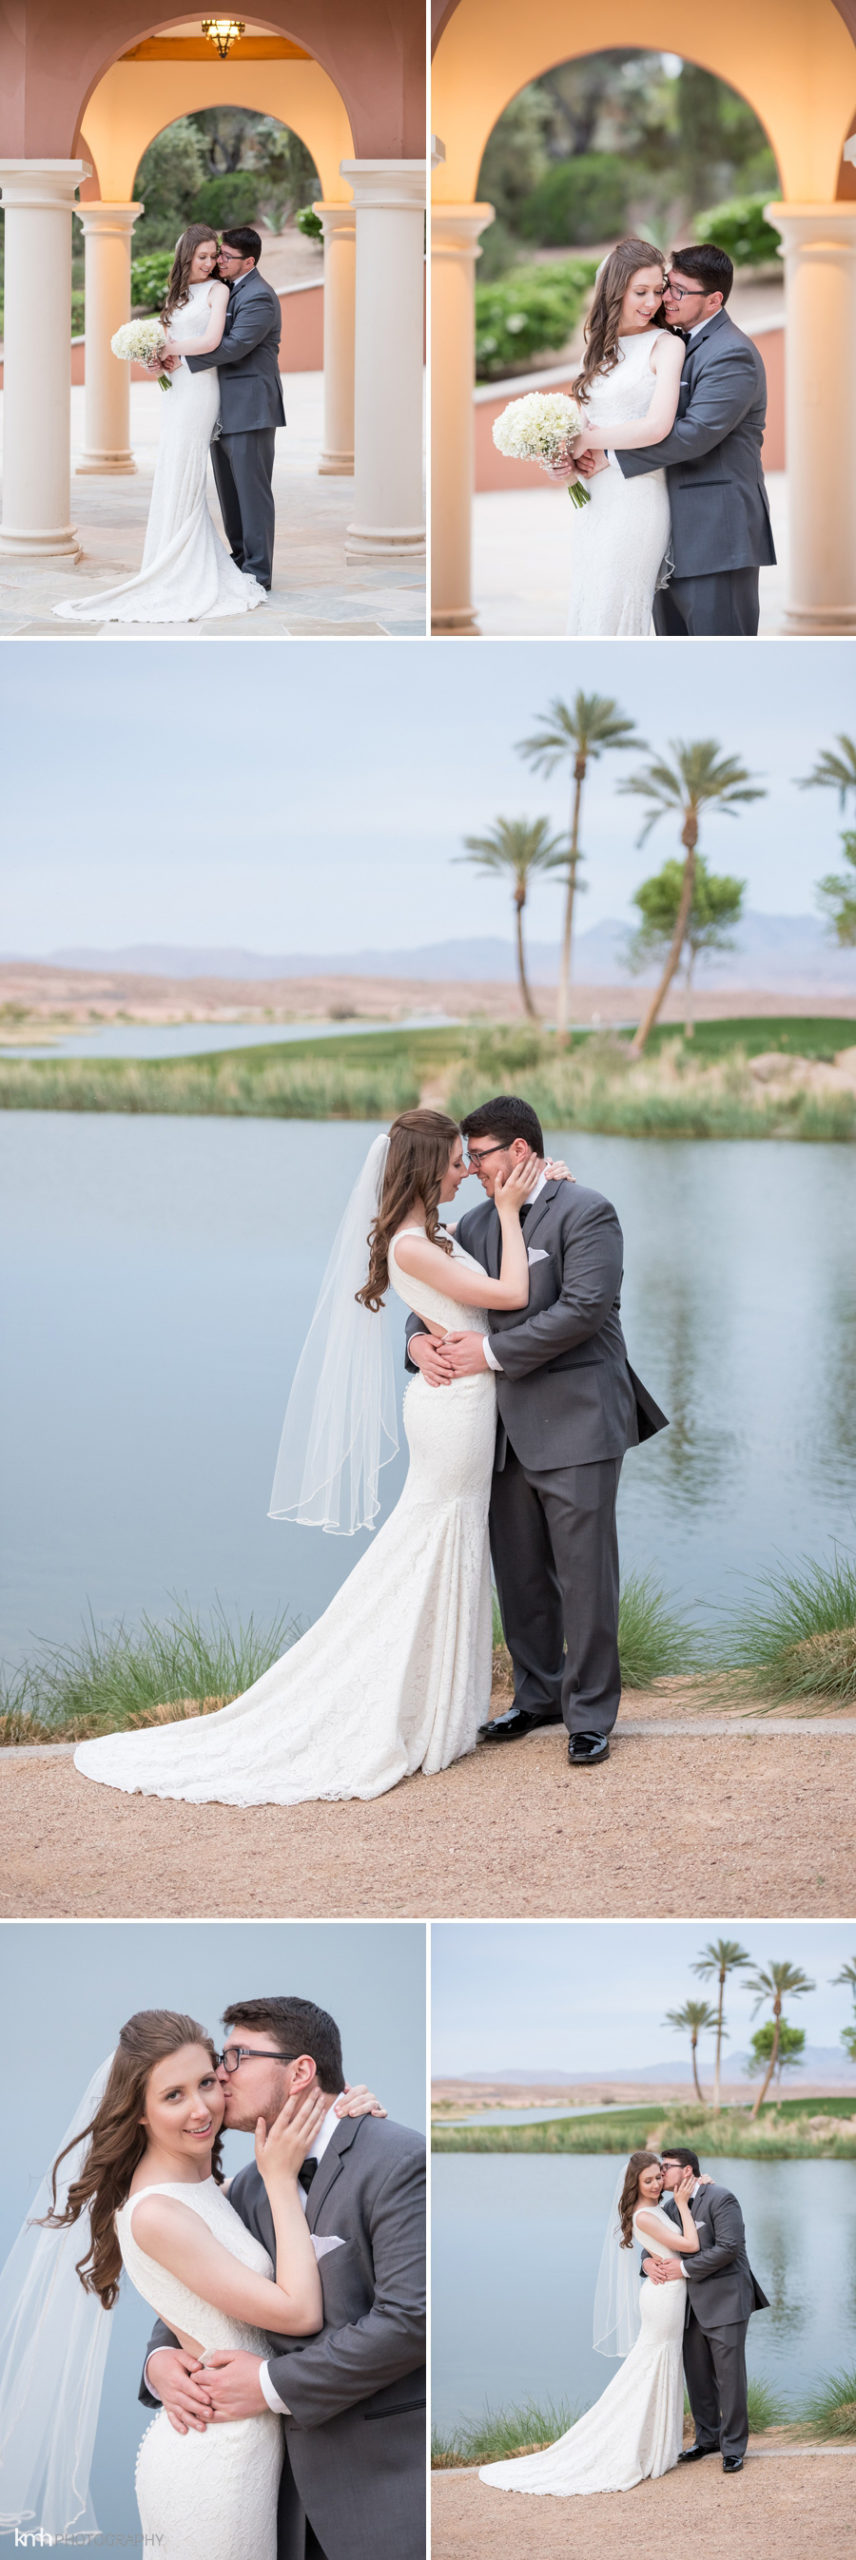 Westin Lake Las Vegas Resort Wedding | KMH Photography | Las Vegas Wedding Photographer